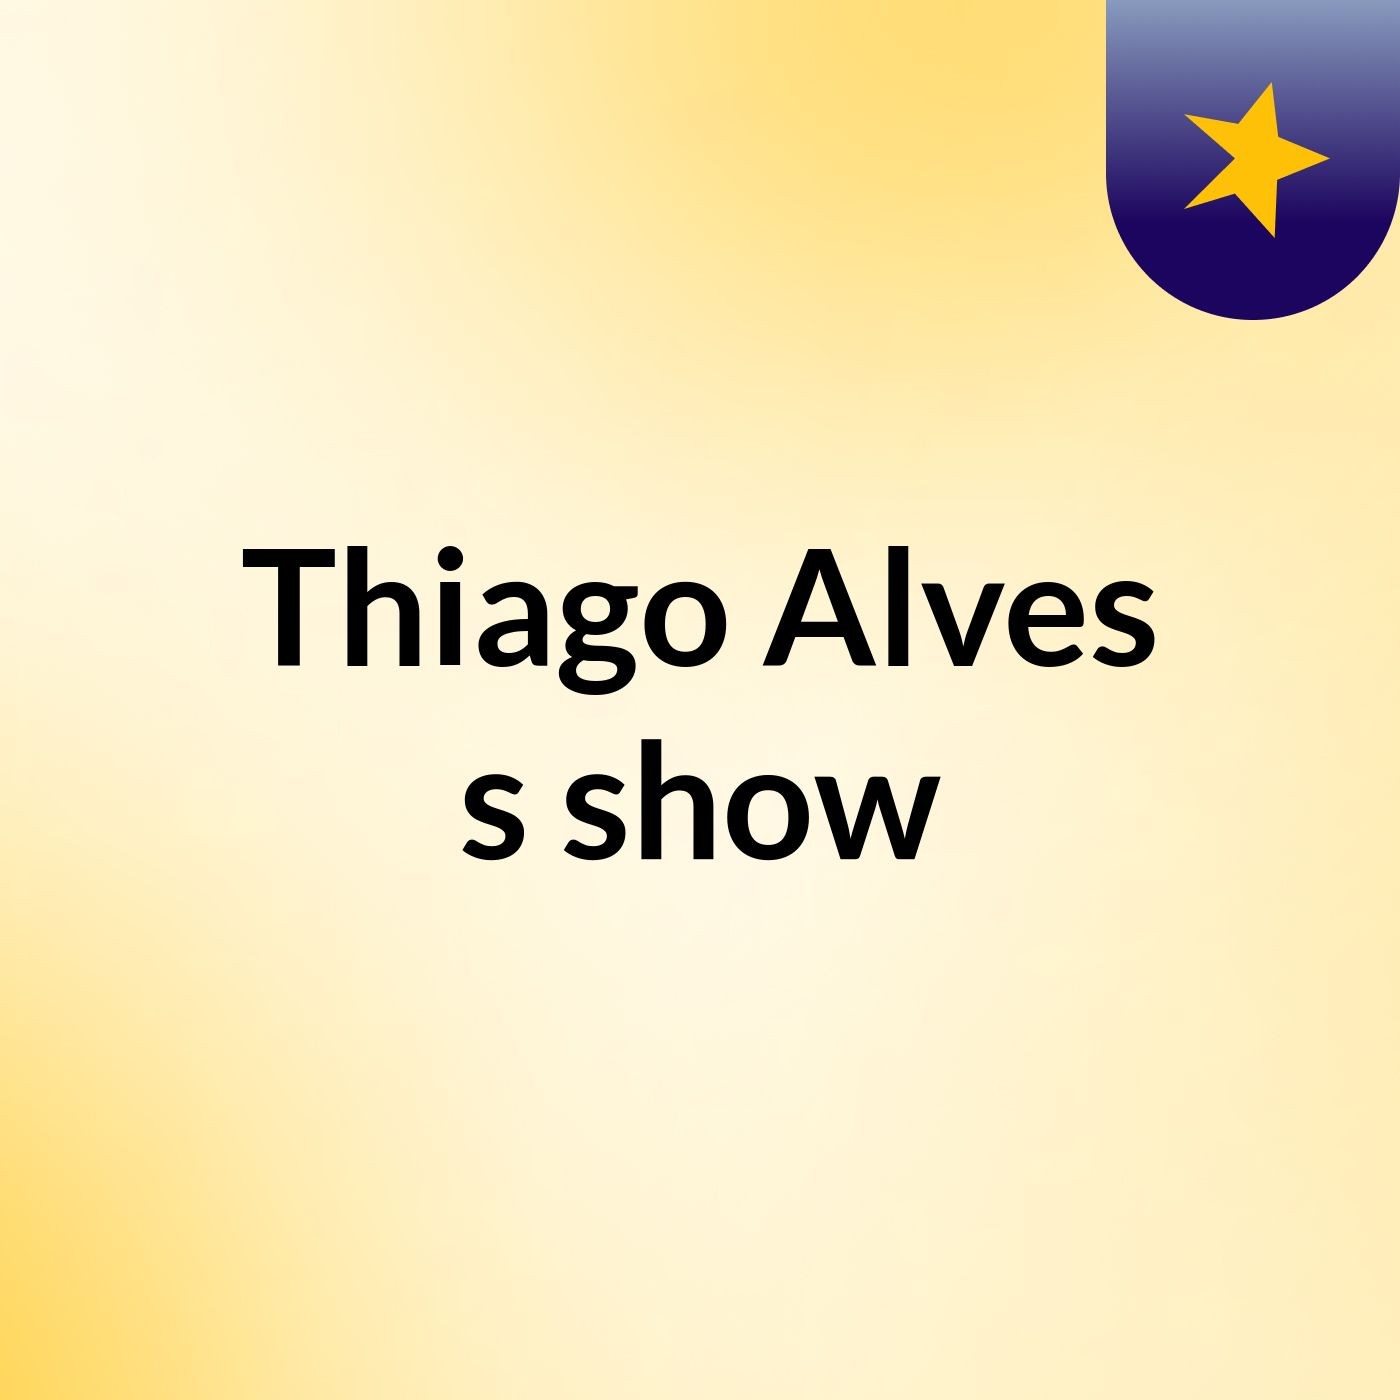 Thiago Alves's show